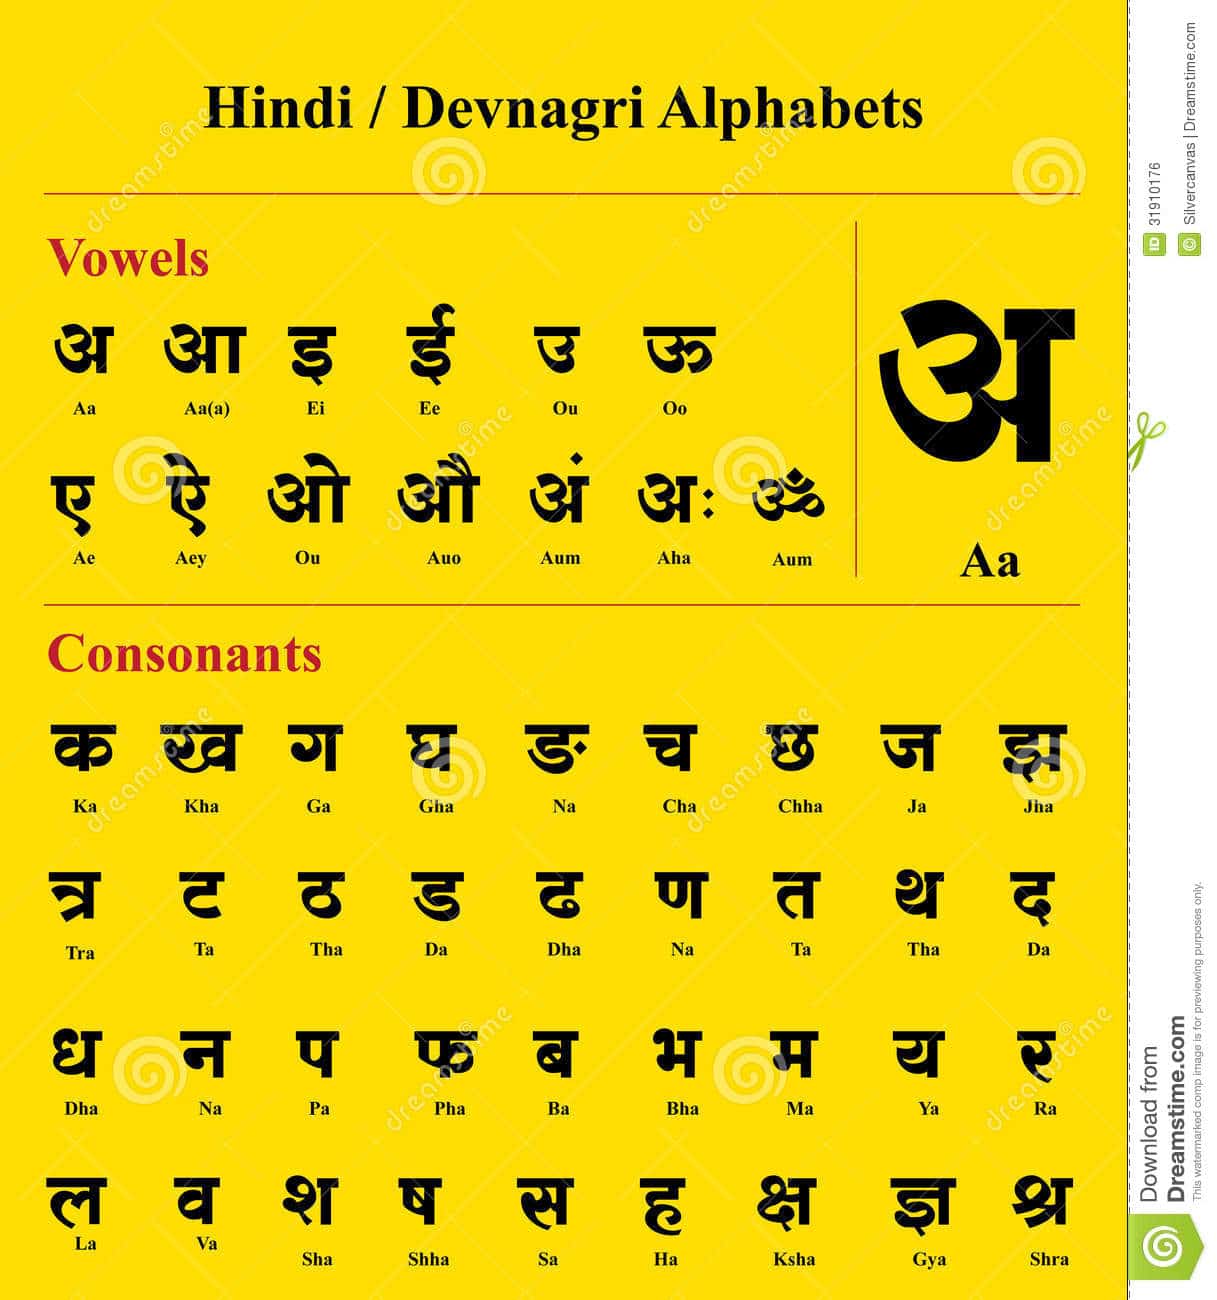 devanagari alphabet pdf